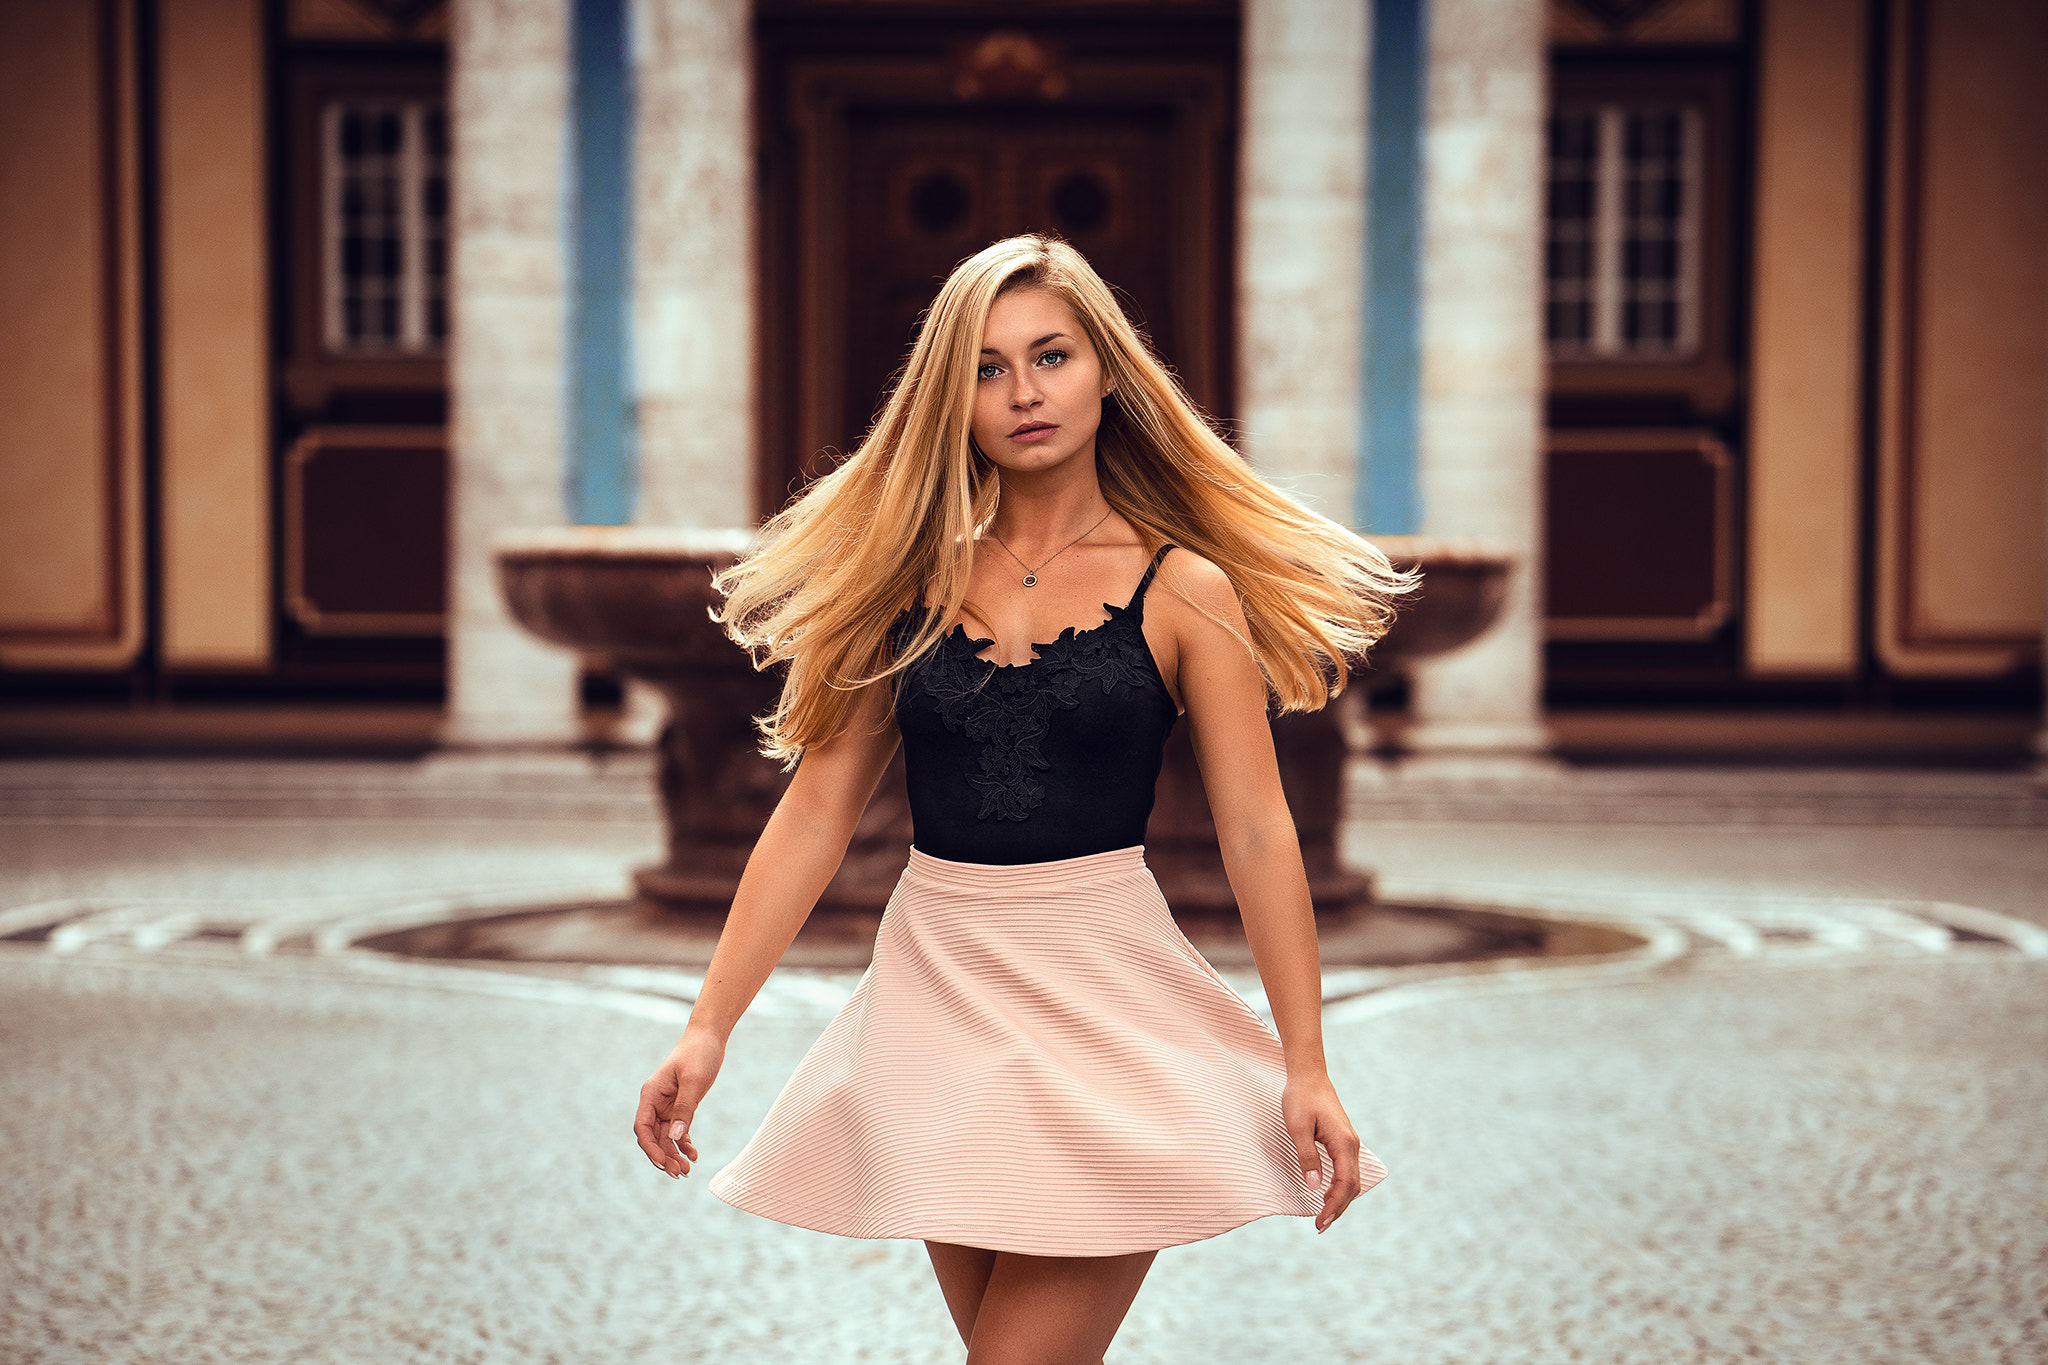 Women Blonde Necklace Dress Pink Skirt Long Hair Women Outdoors Black Tops Anatoli Oskin 2048x1365